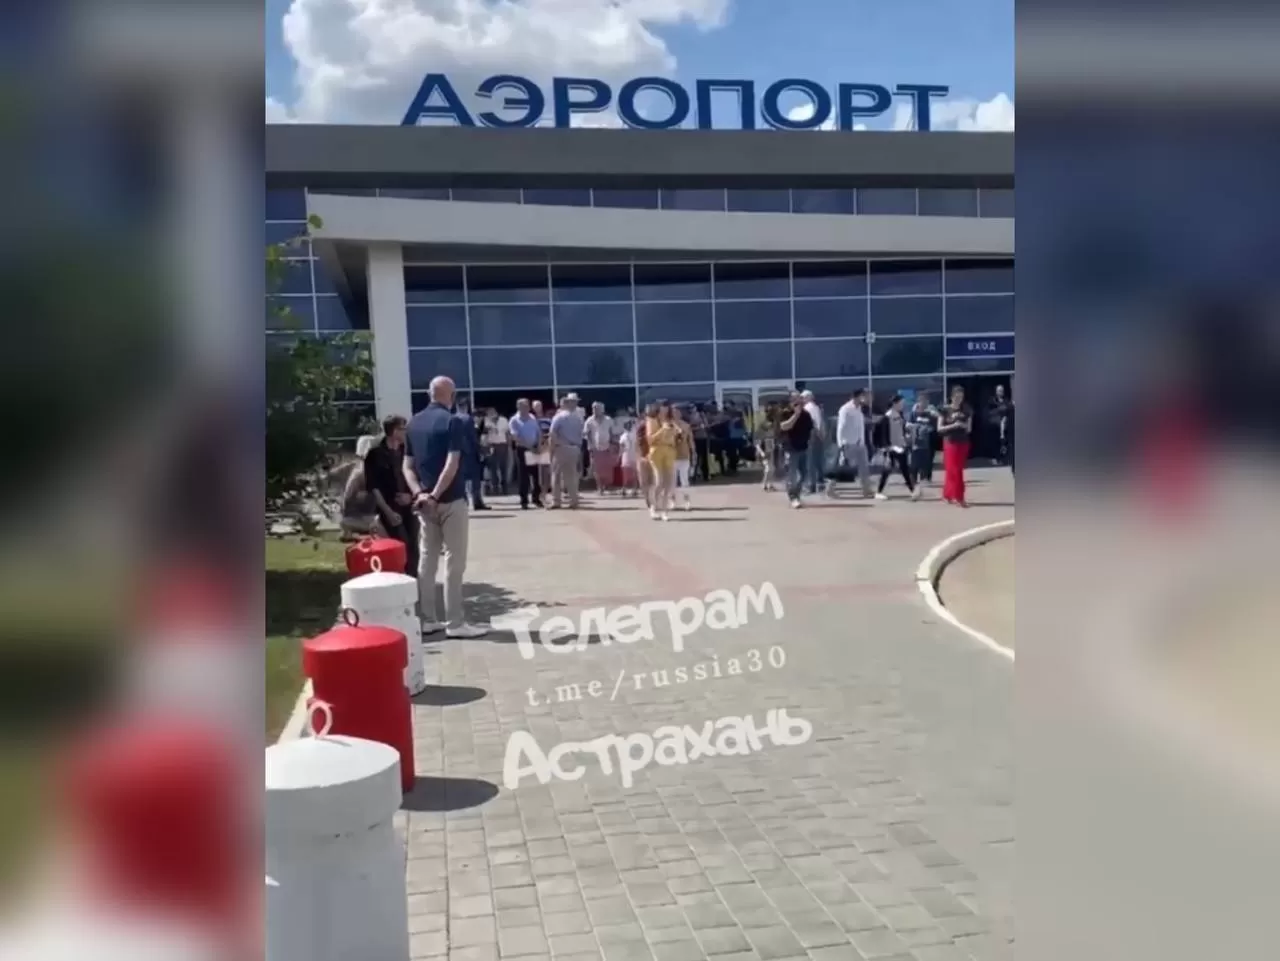 Аэропорт Астрахани эвакуировали из-за тревожного сообщения